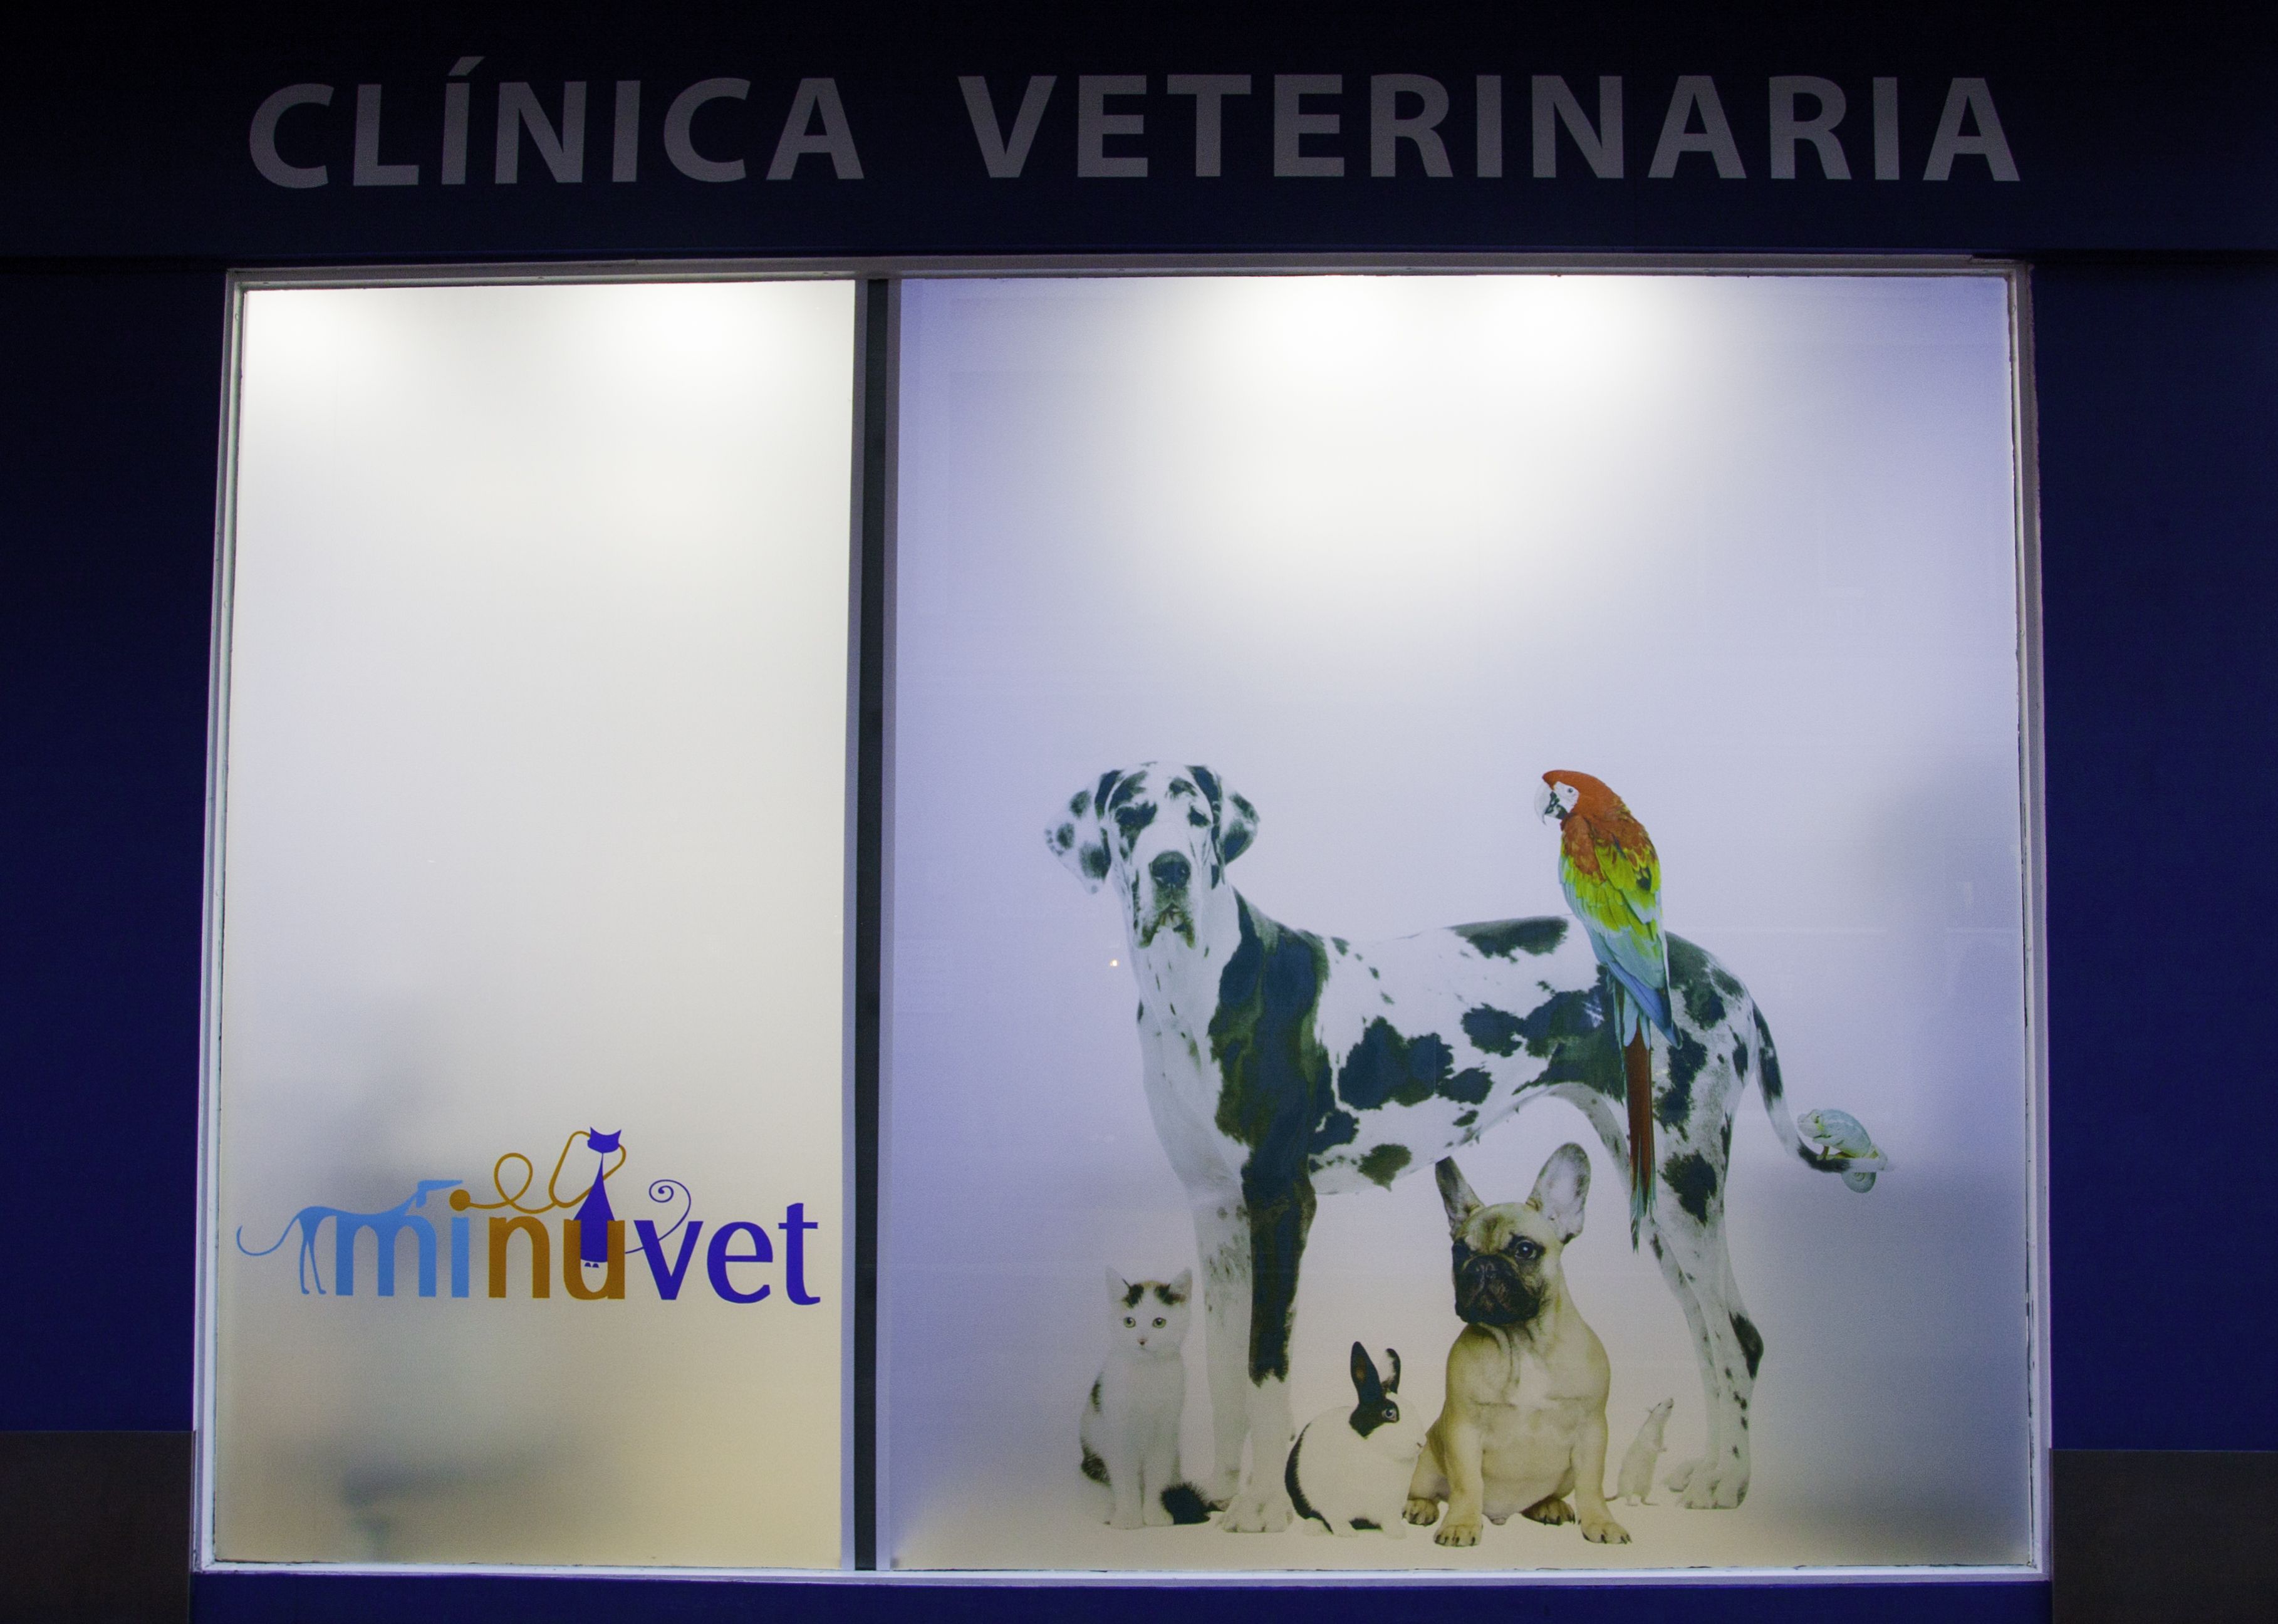 Foto 11 de Clínica veterinaria en León | Clínica Veterinaria Minuvet León-Urgencias 24h 